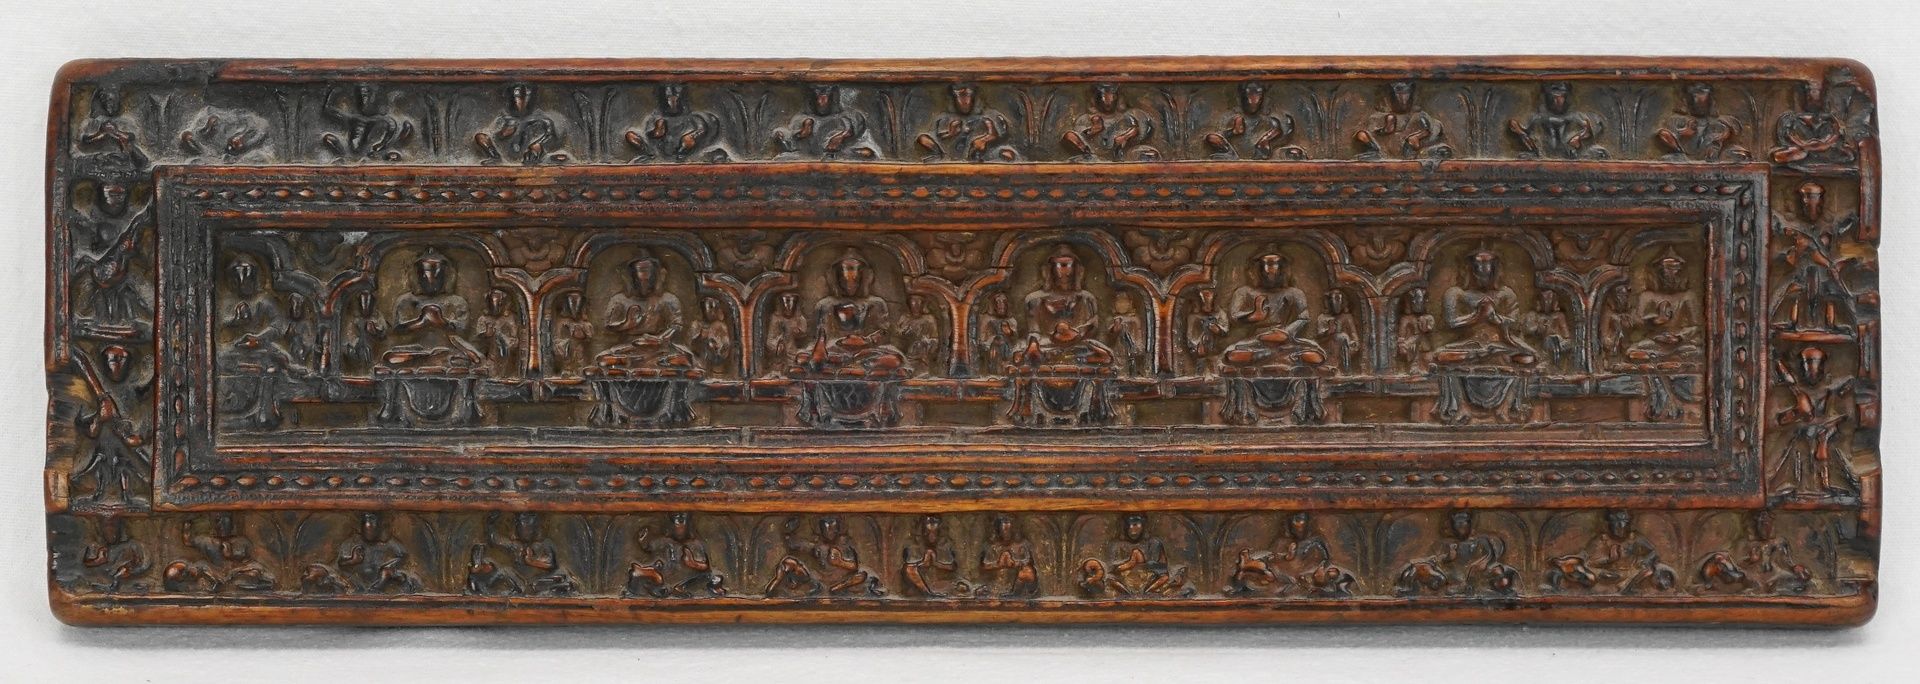 Kleiner tibetischer Buddha Buchdeckel / Sutra-Deckel, 18./19. Jh.Holz, fein geschnitzter Buchdeckel,